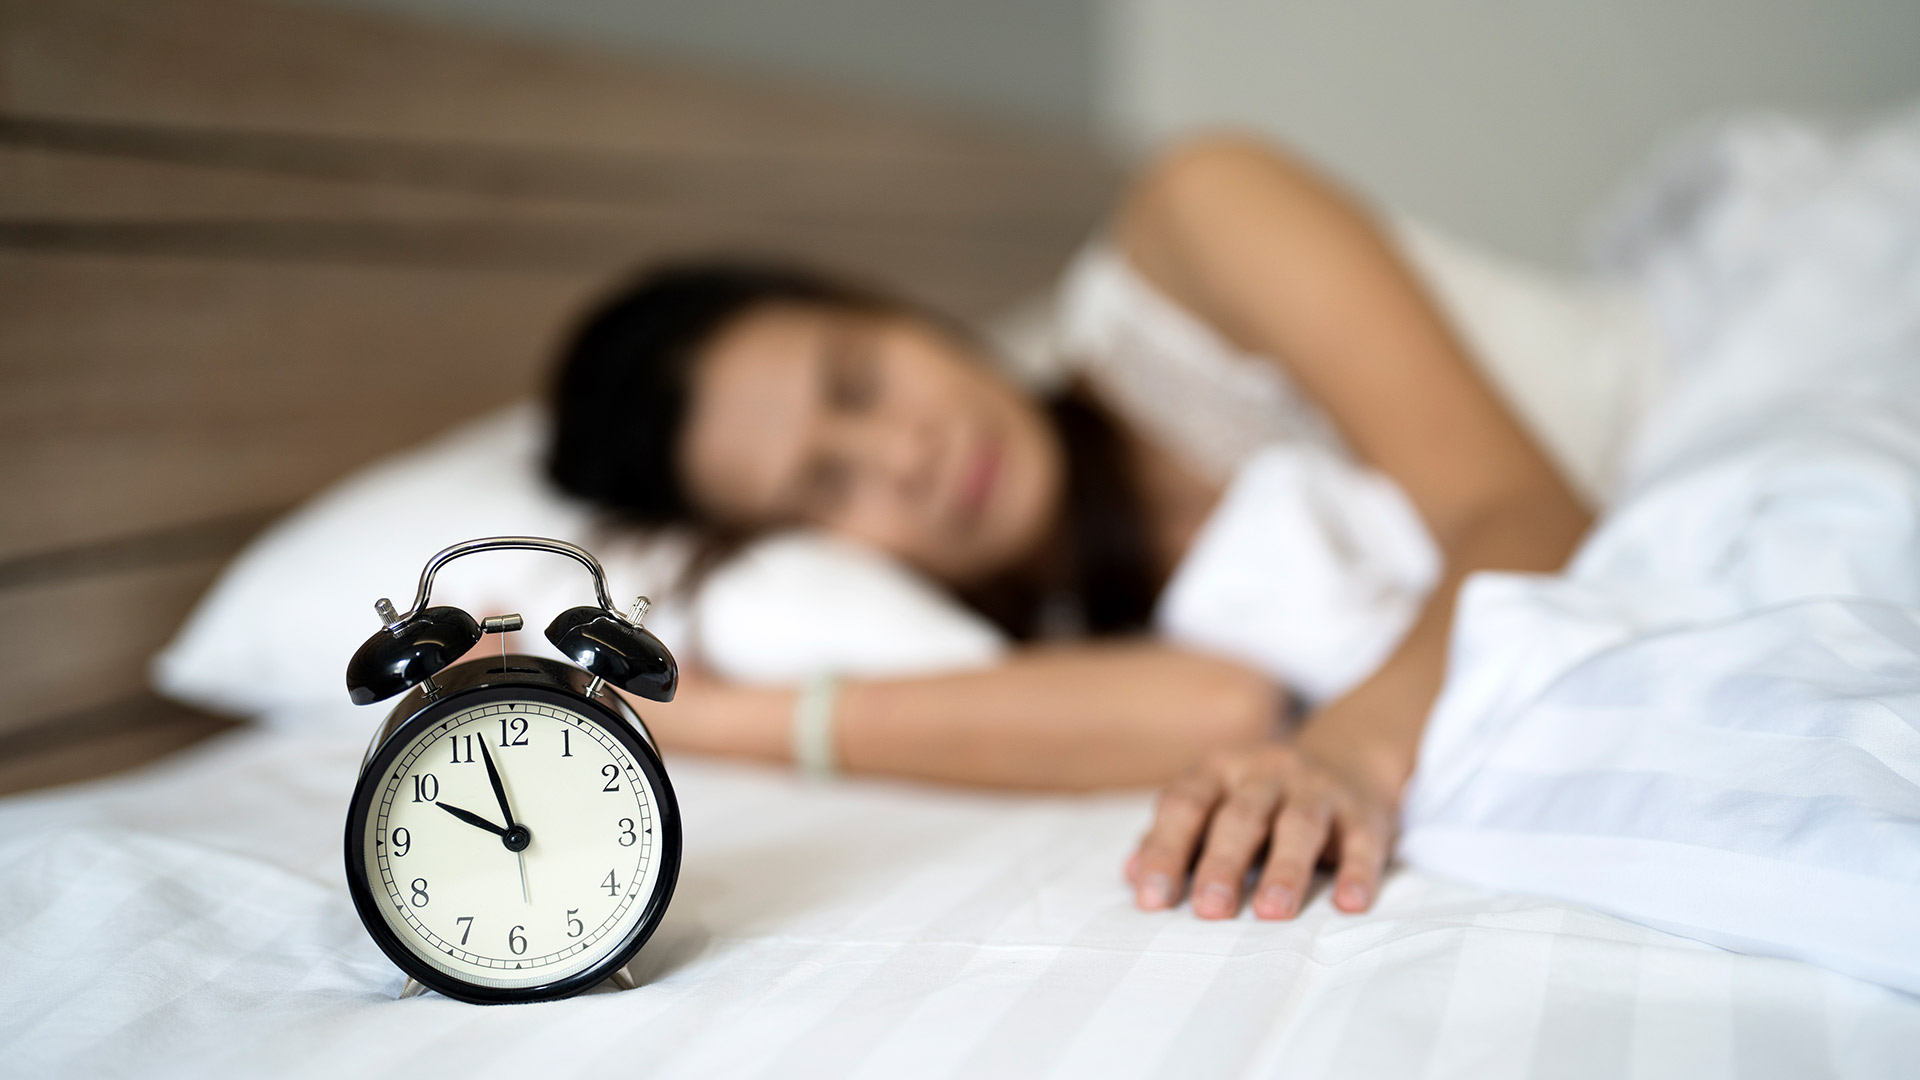 Una de las medidas fundamentales consiste en despertarse y acostarse todos los días a la misma hora (Getty)